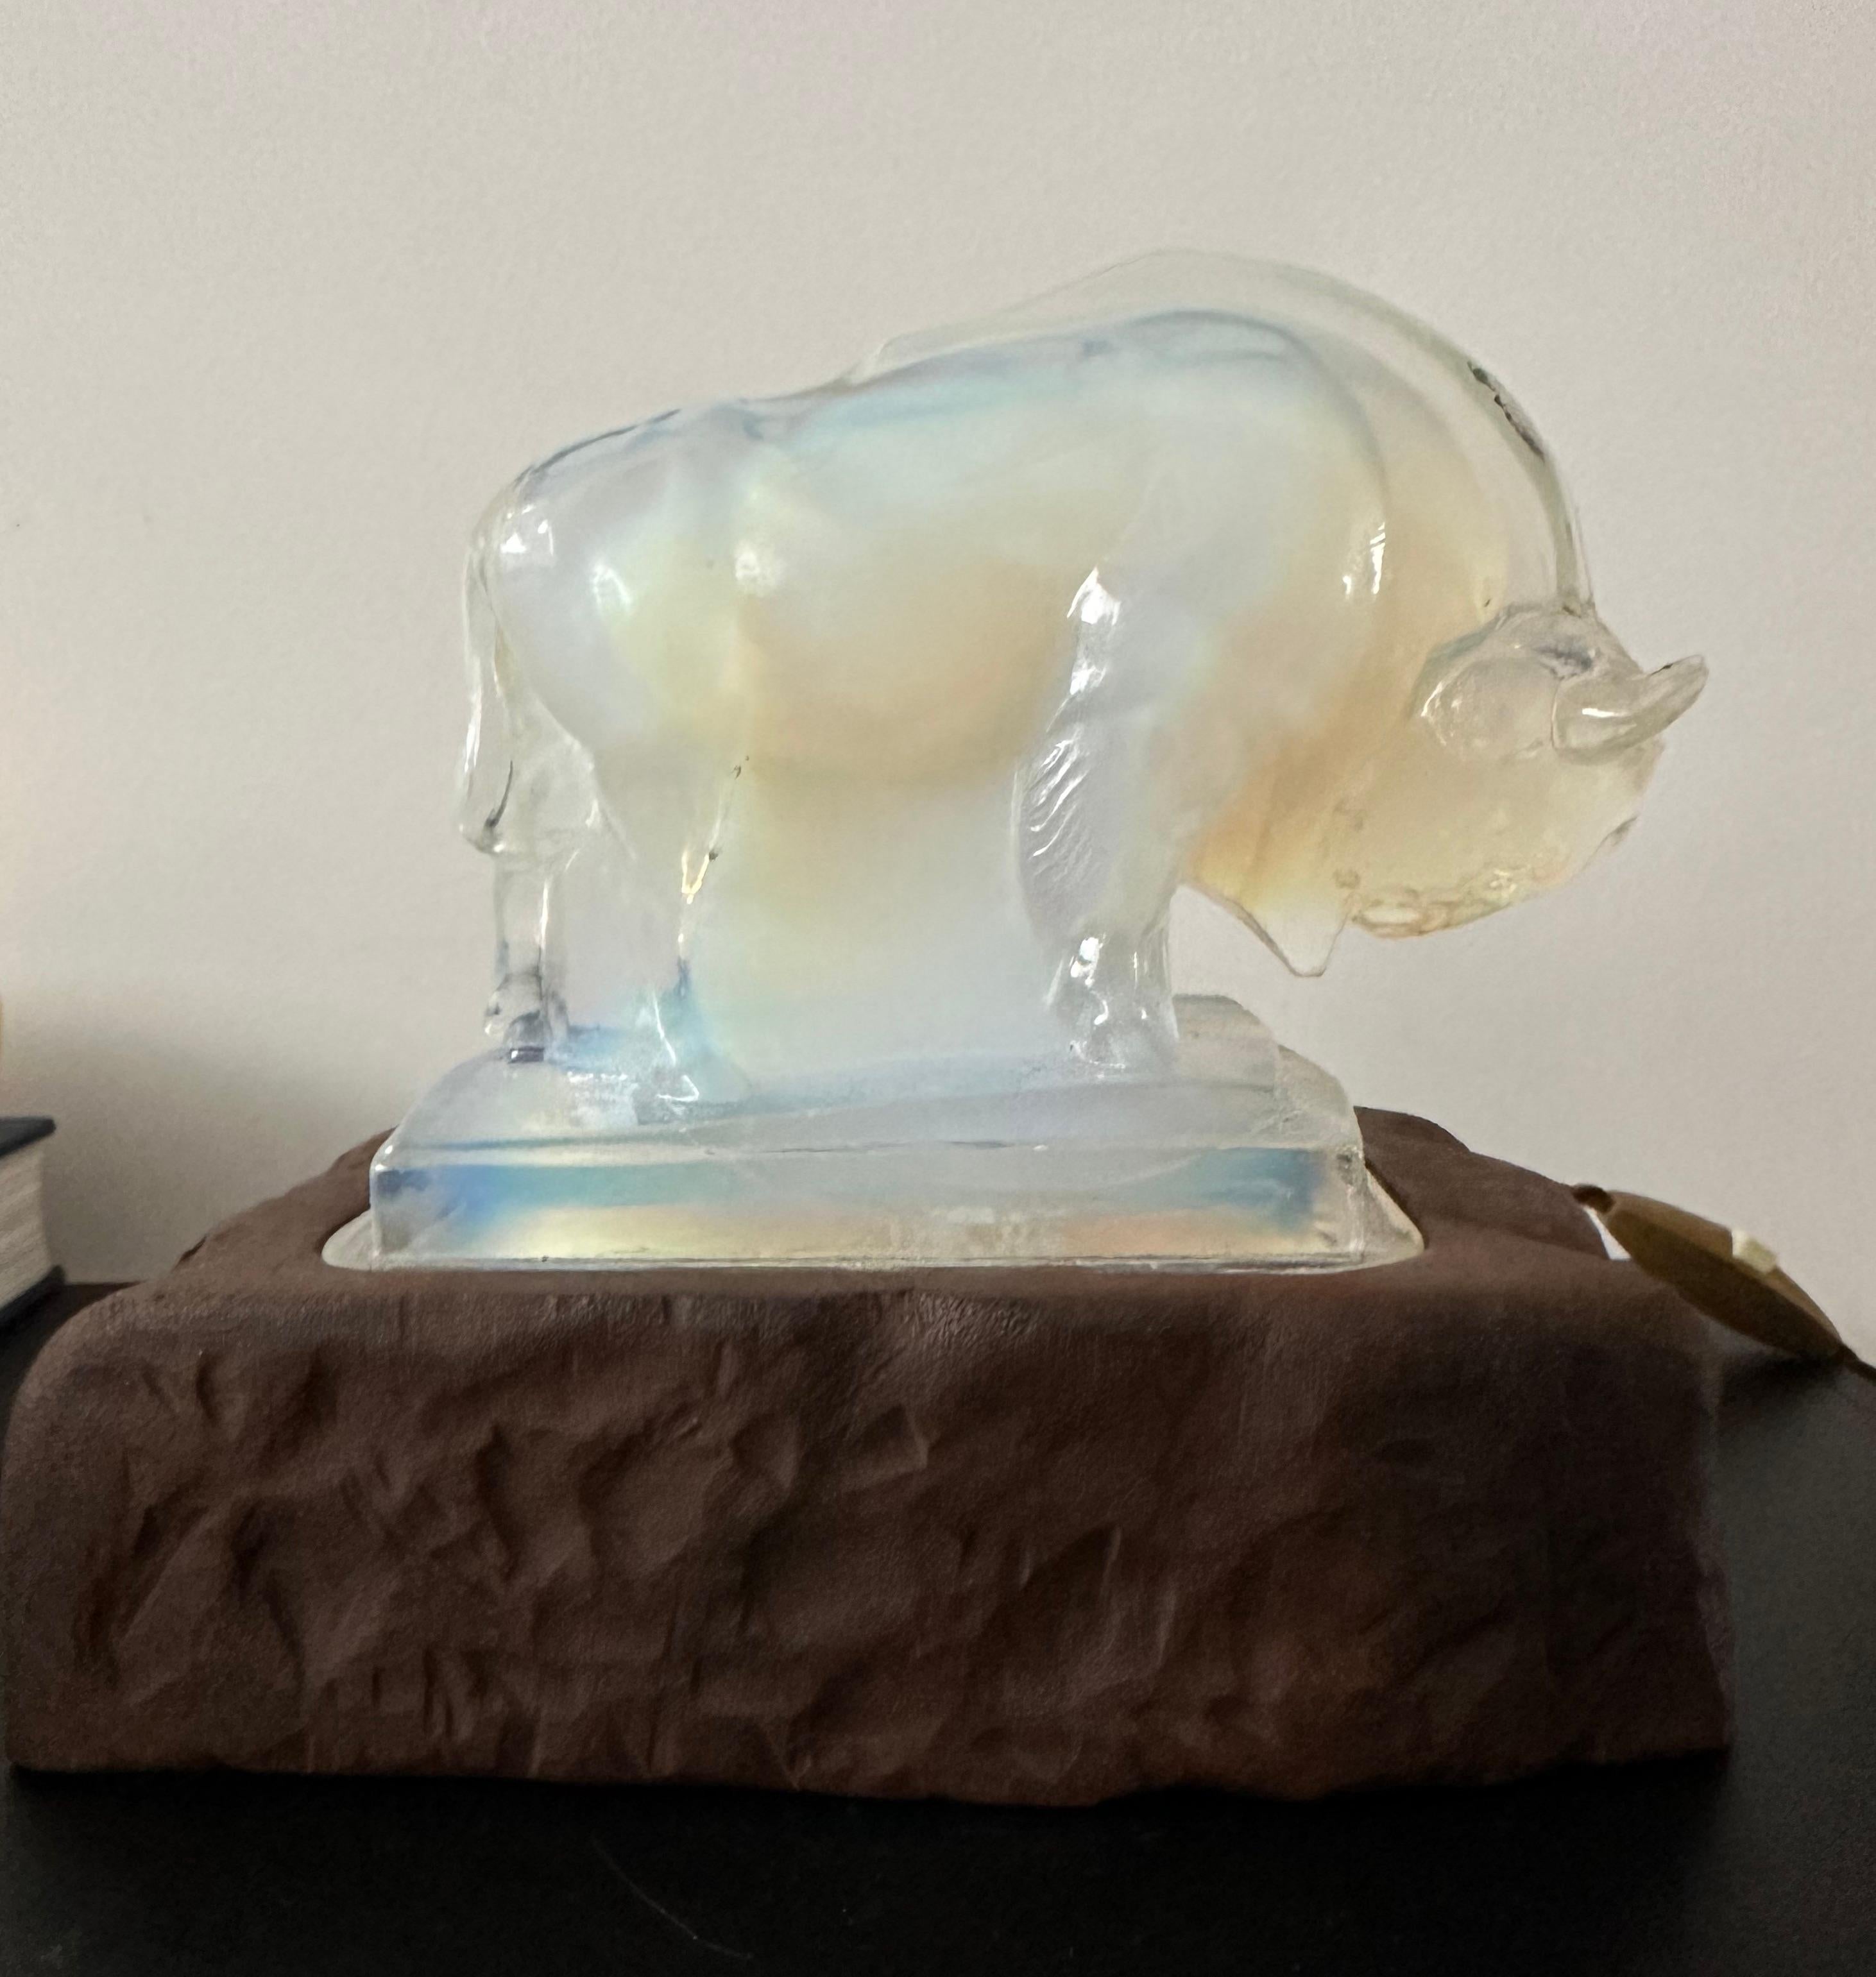 Rare et élégante lampe sculpture de bison par EDMOND ETLING.

Cette magnifique lampe de table Art déco très artistique porte la signature 